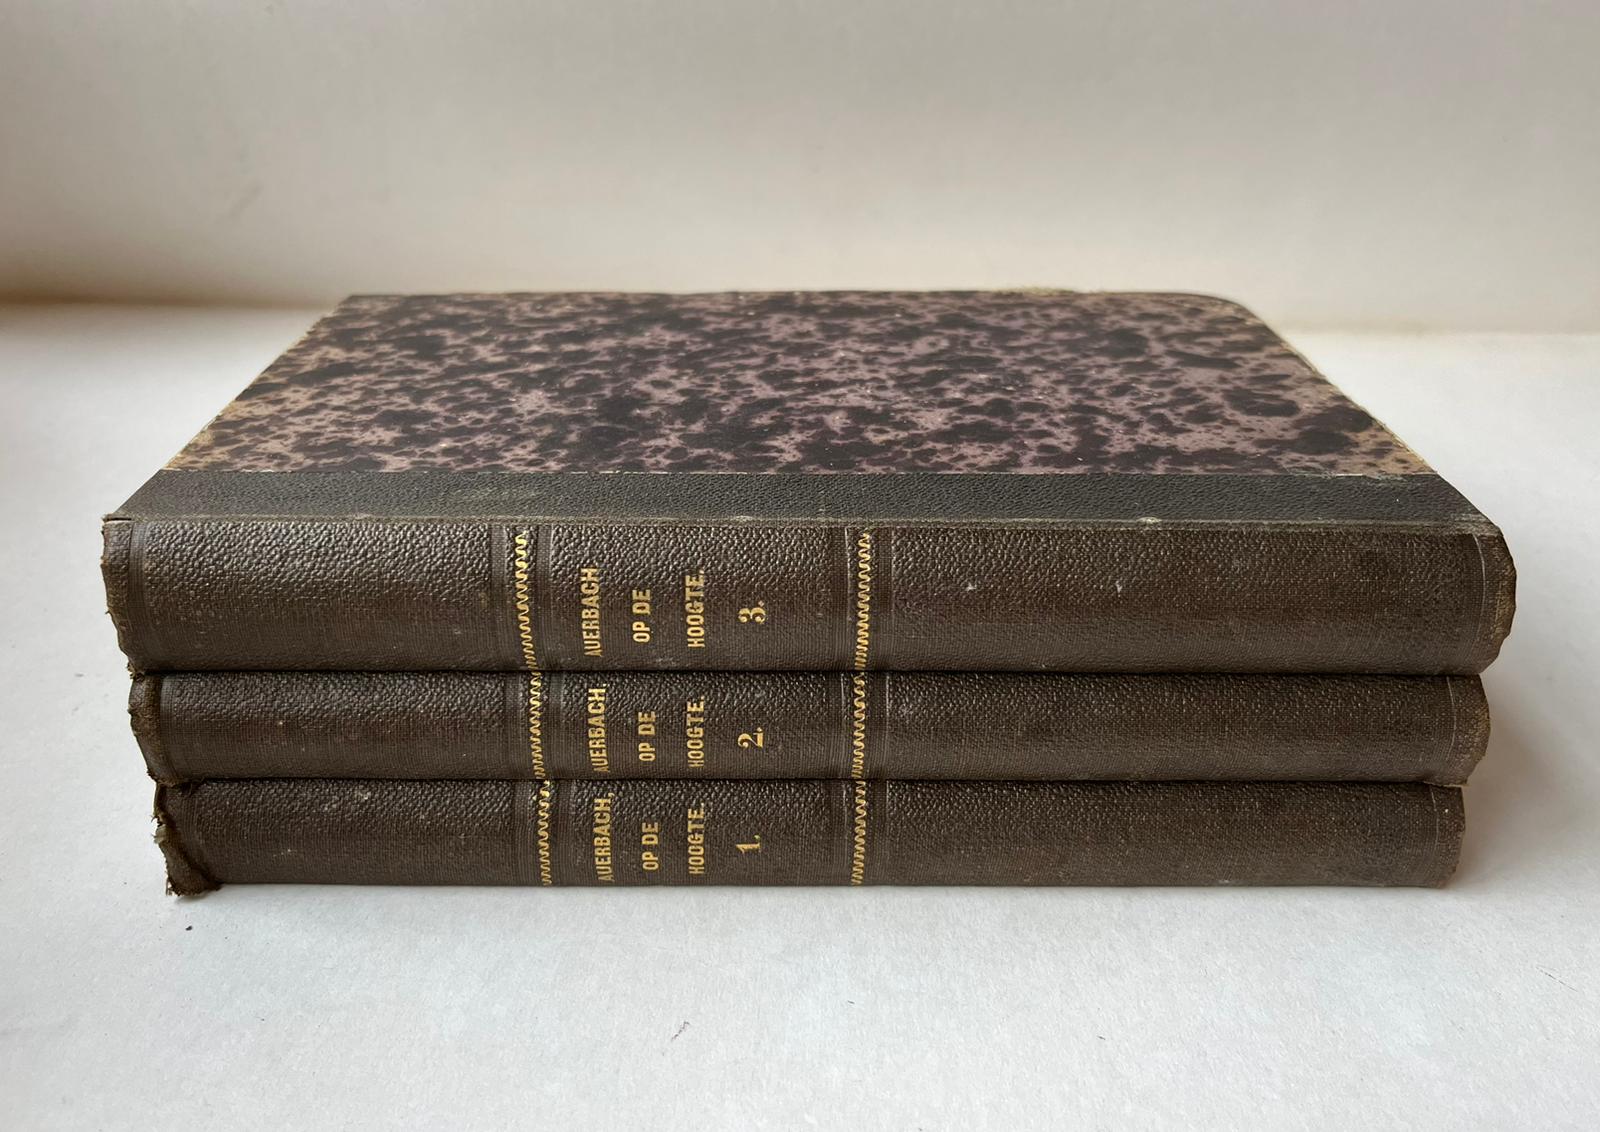 [Rare literature 1867-1868] Op de hoogte. Roman. Vertaald uit het Duits. Utrecht, L.E. Bosch en zoon, 1867-1868. [3 volumes]